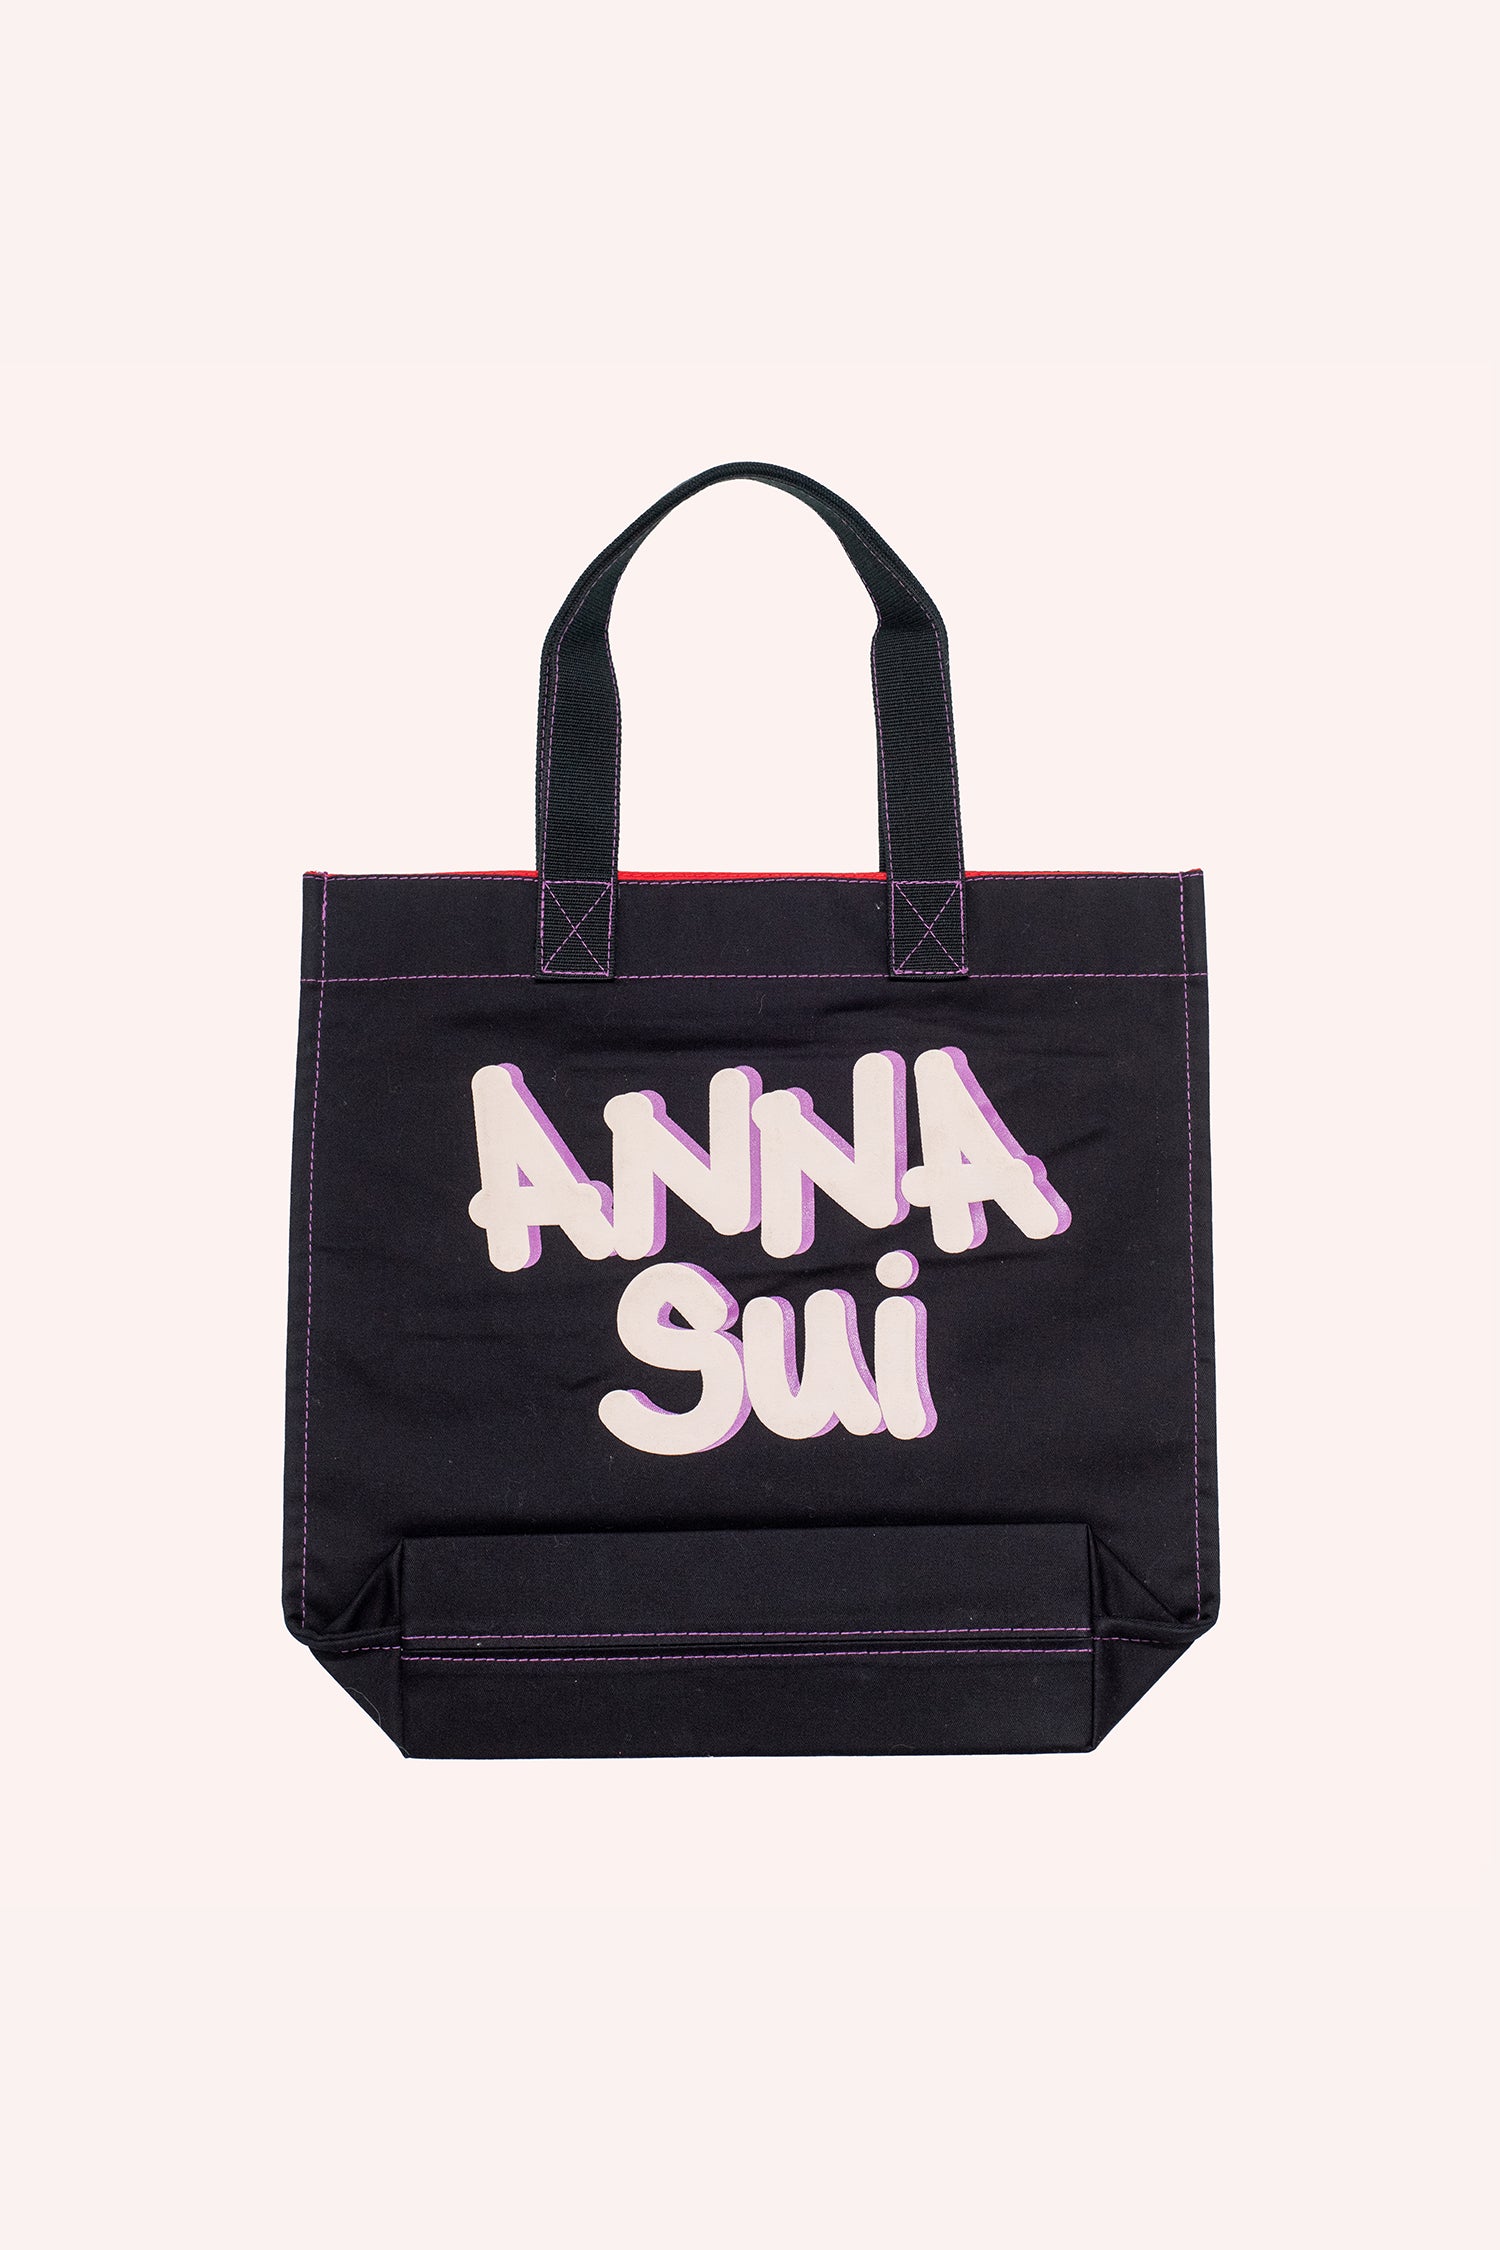 Bolsa de mano, forma cuadrada negra, marca Anna Sui en el otro lado en letra grande